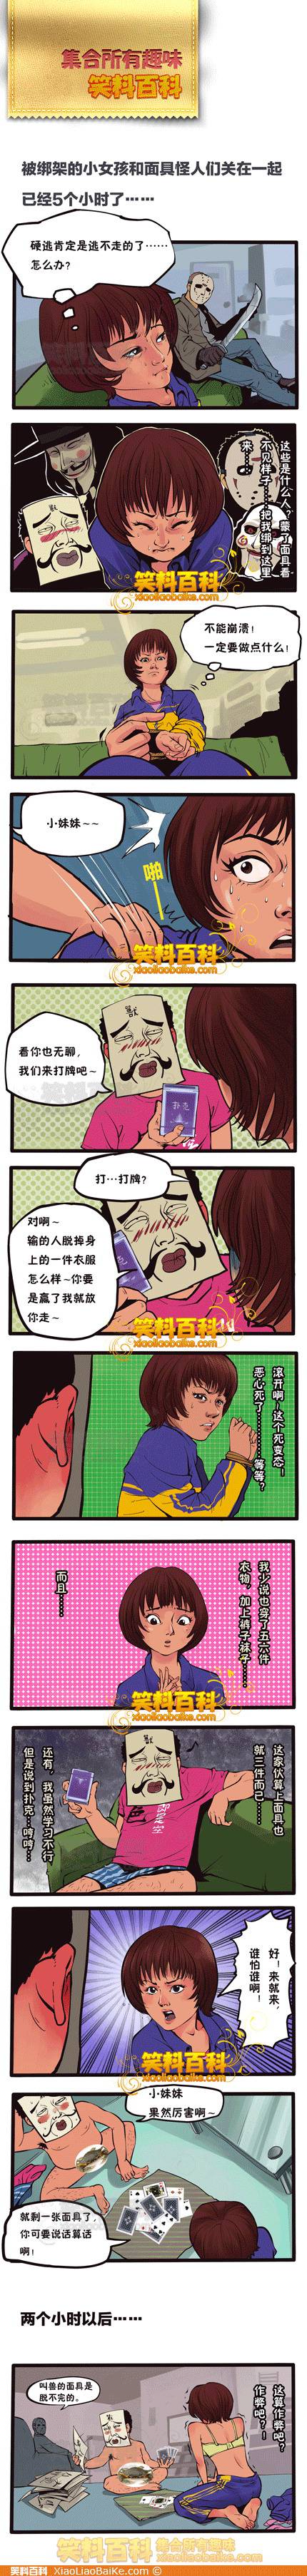 邪恶漫画爆笑囧图第38刊：新技术